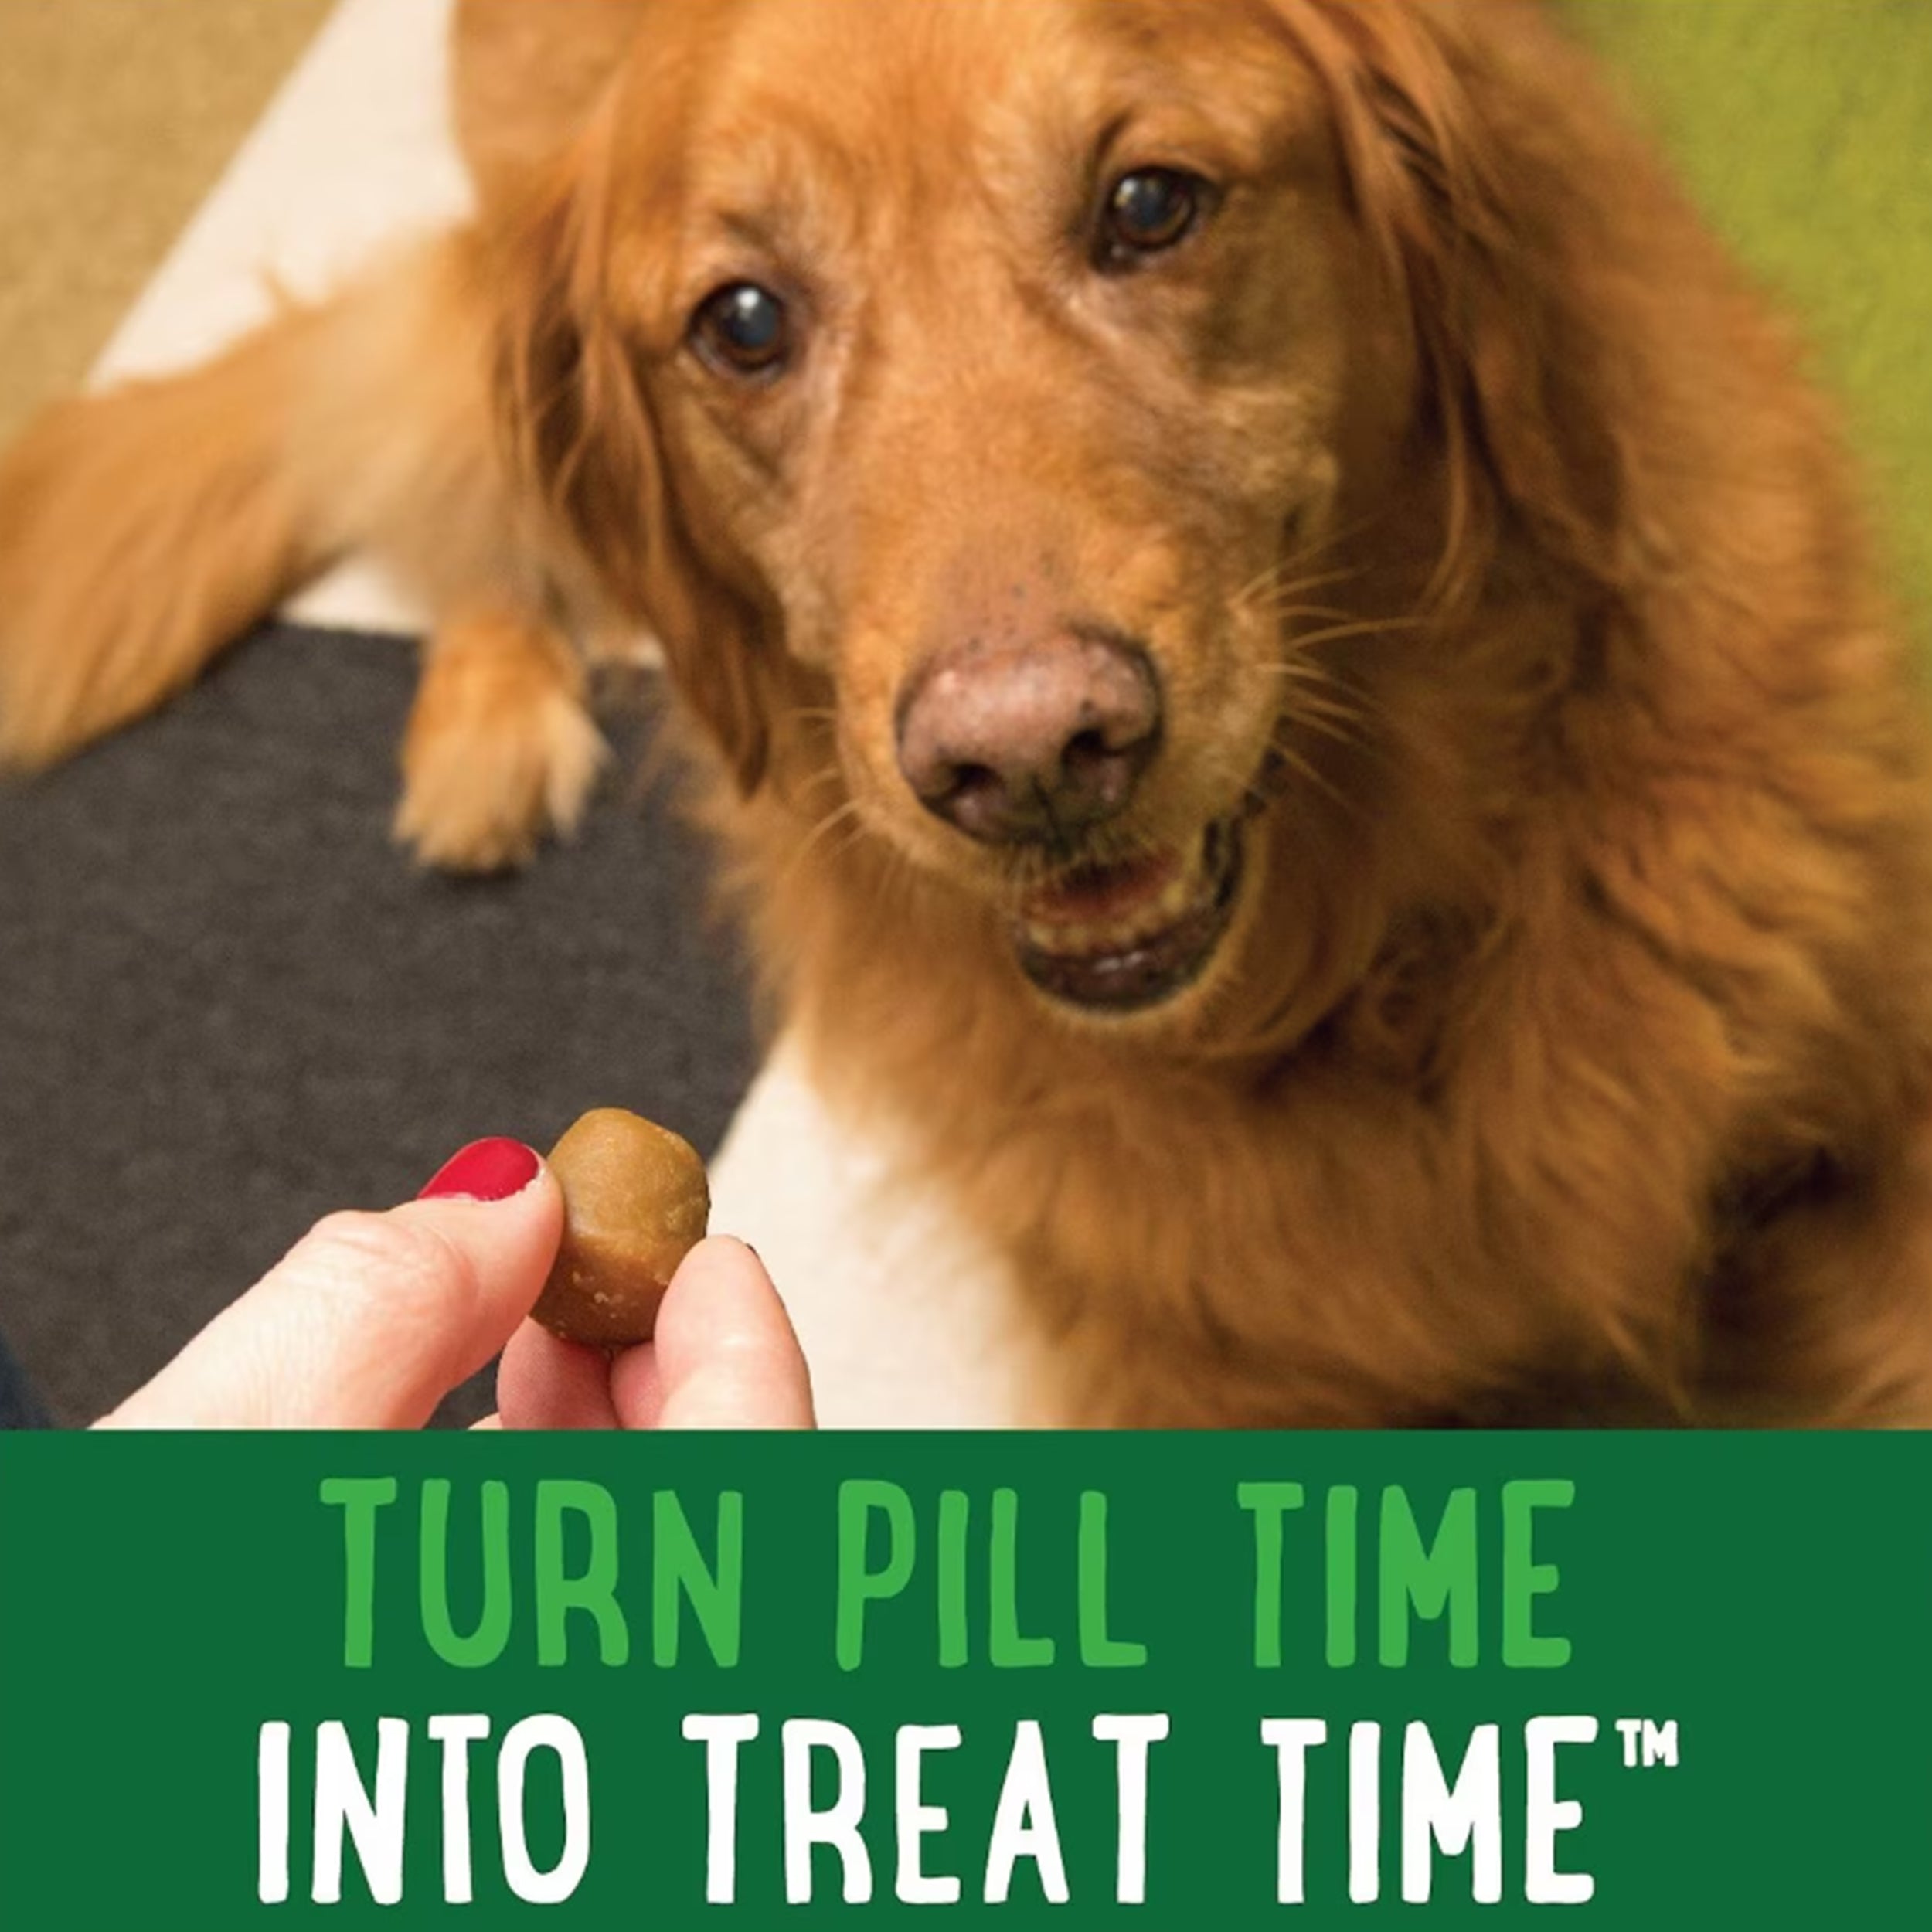 Greenies Pill Pockets Canine Hickory Smoke Flavor Dog Treats